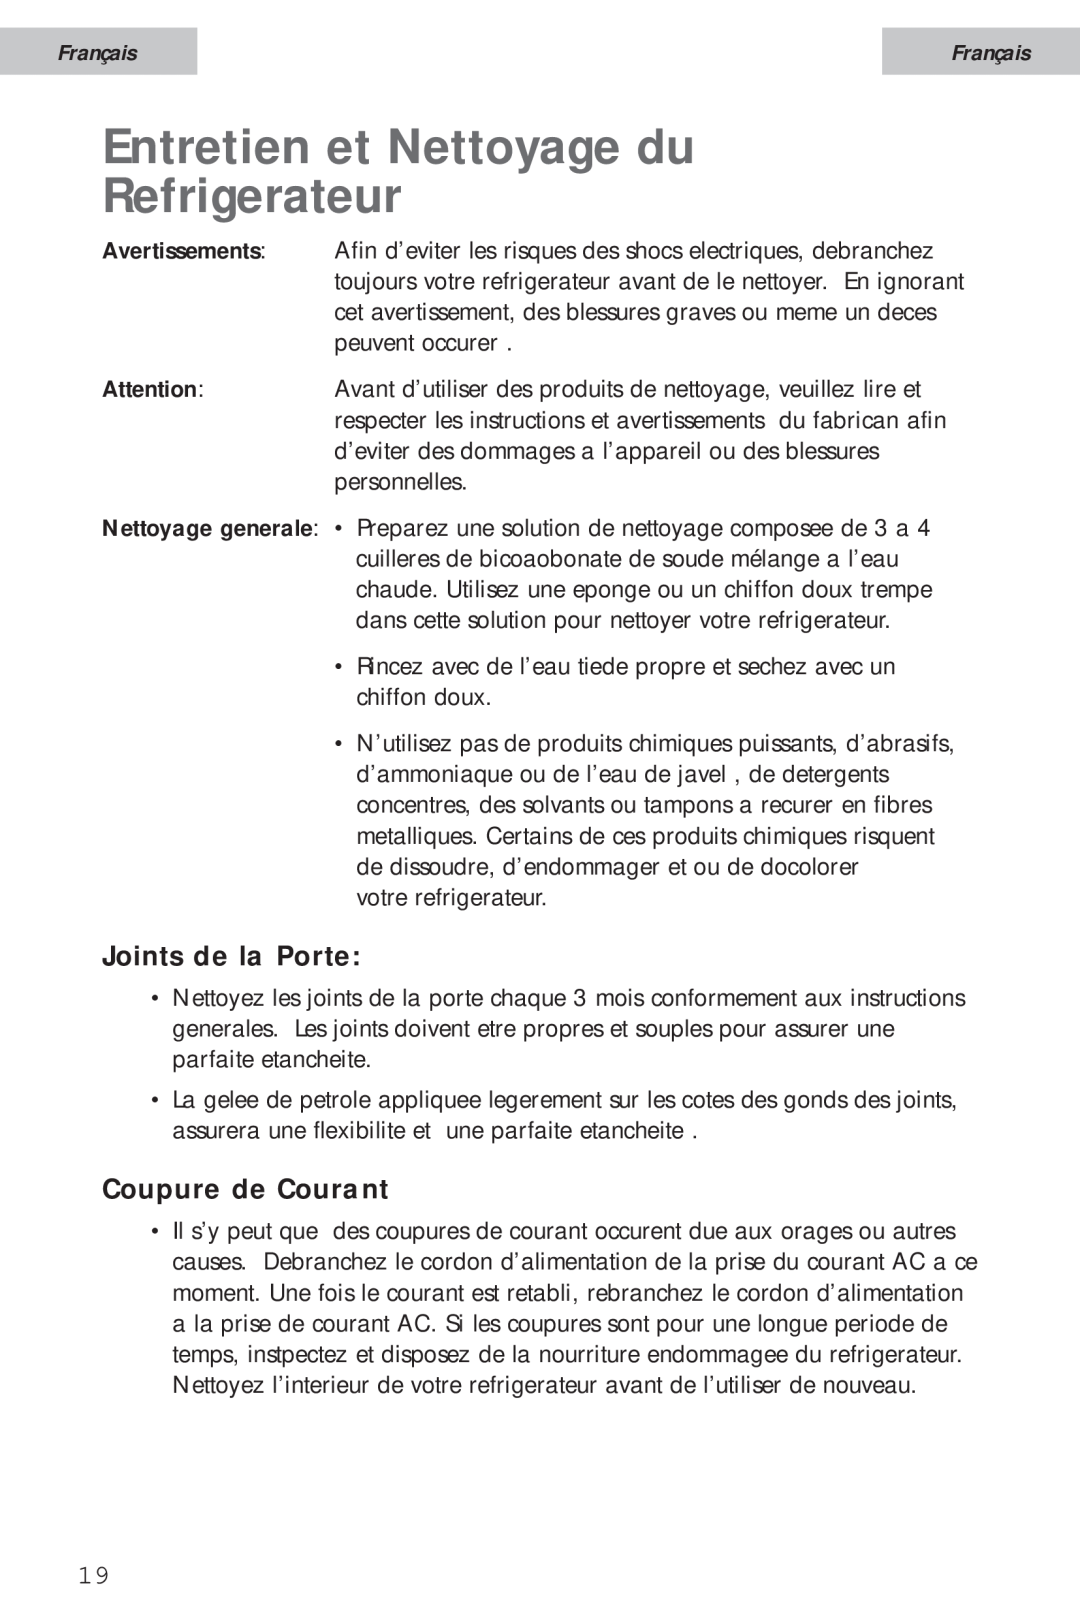 Haier HSA02WNC user manual Entretien et Nettoyage du Refrigerateur, Joints de la Porte, Coupure de Courant, Français, cias 